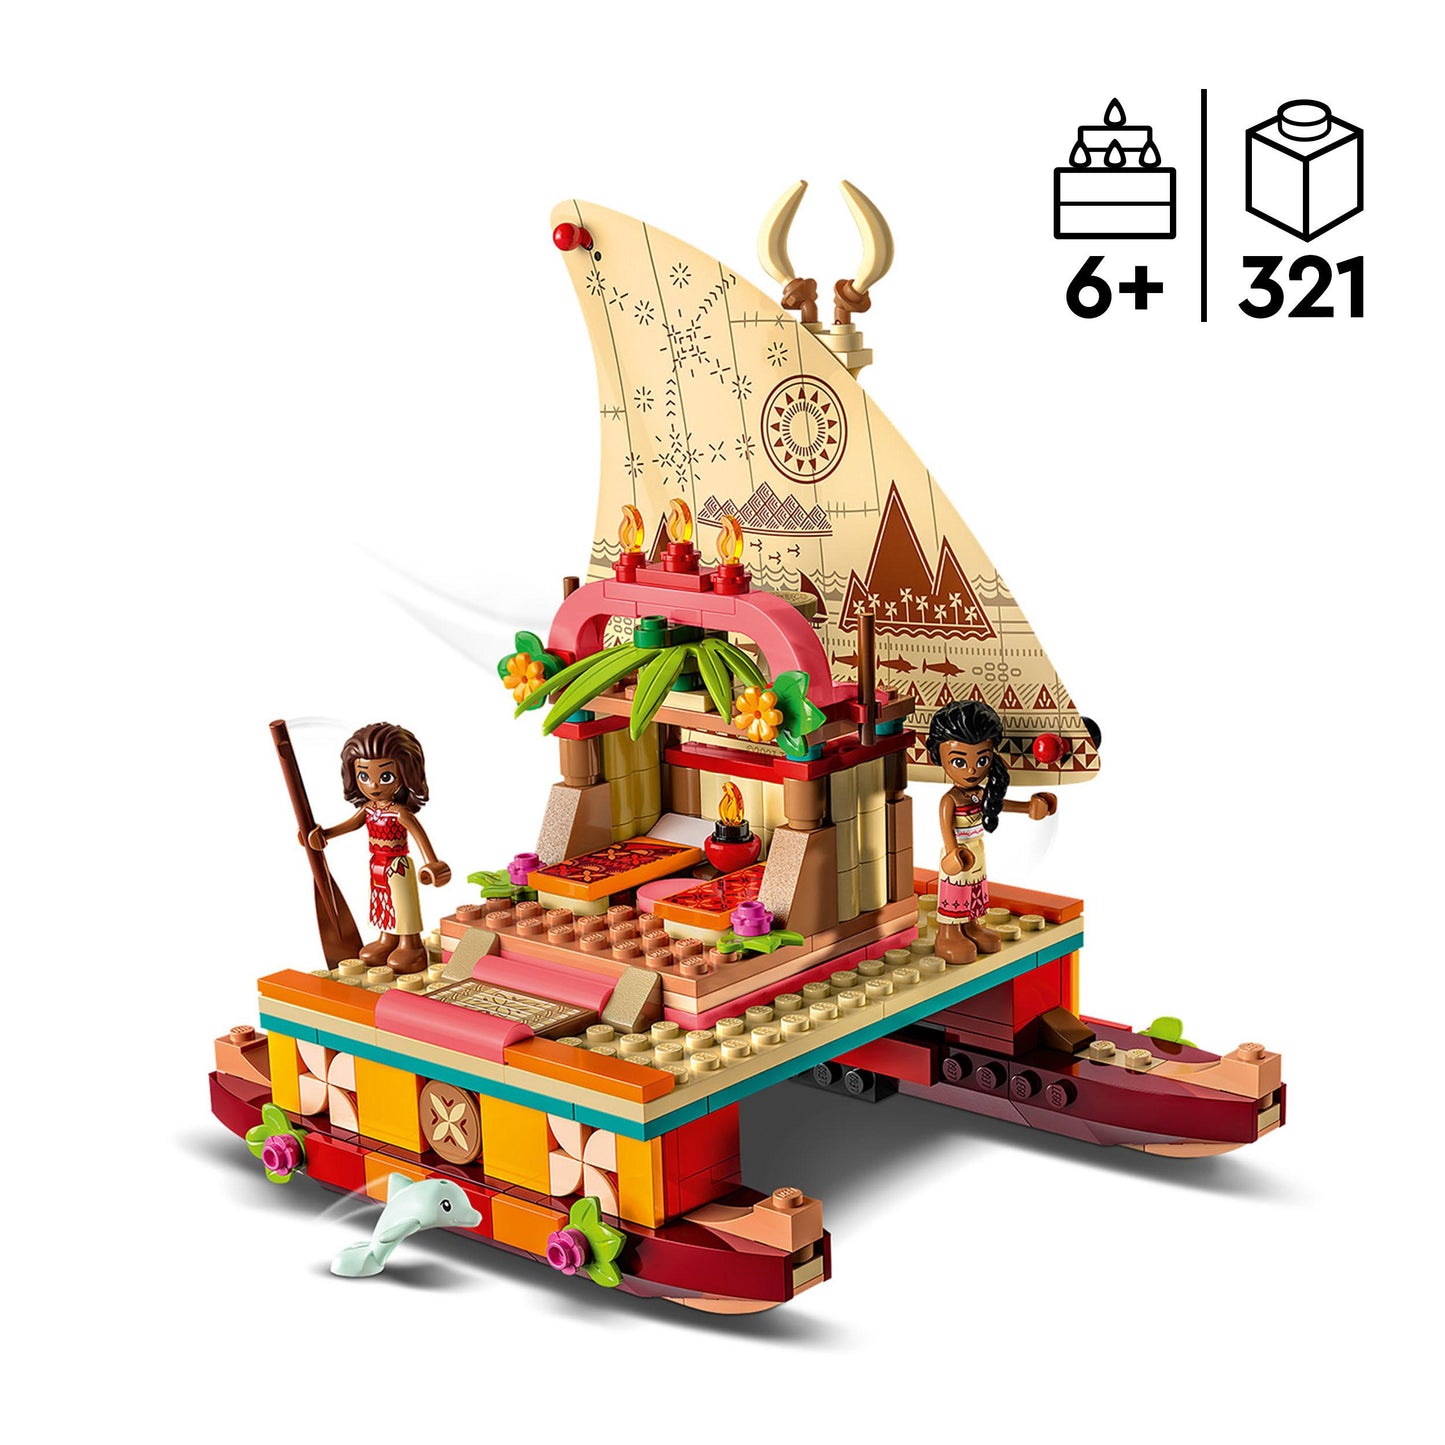 43210 LEGO Disney - La barca a vela di Vaiana